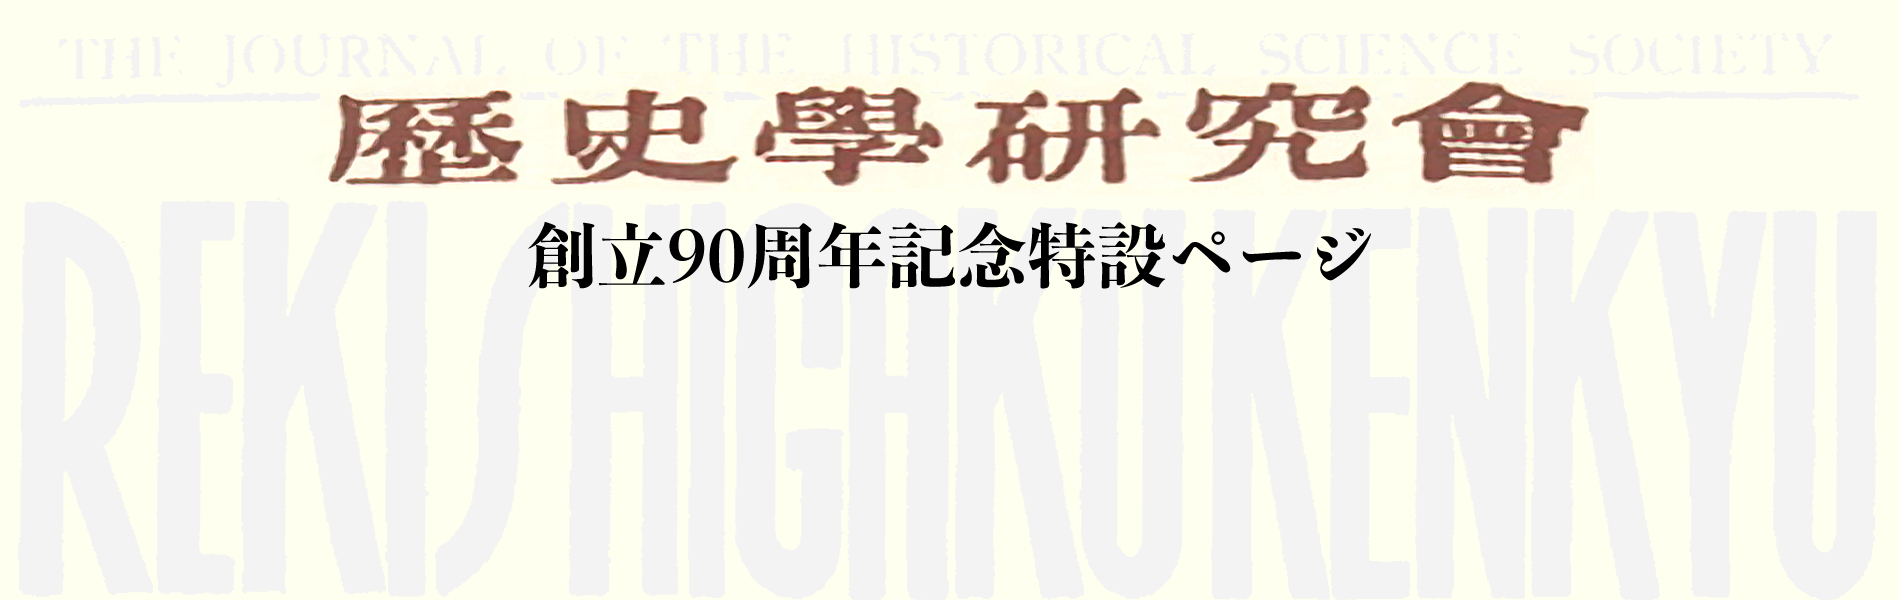 歴史学研究会創立90周年記念特設ページ